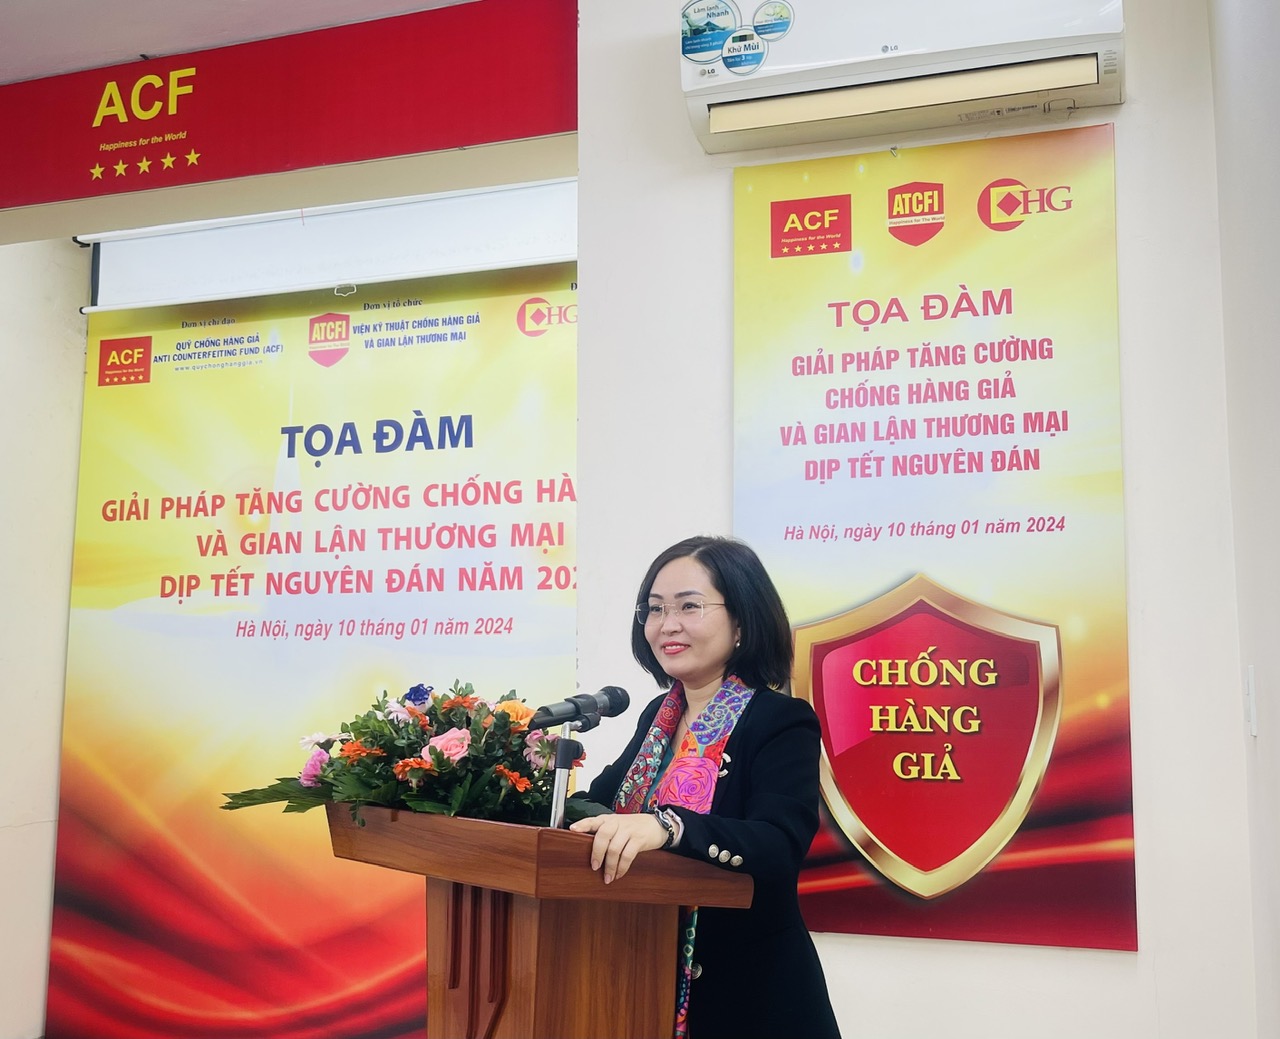 Bà Nguyễn Thị Thu Hoài, Phó Viện trưởng Viện Kỹ thuật Chống hàng giả và Gian lận thương mại phát biểu khai mạc tại Tọa đàm.